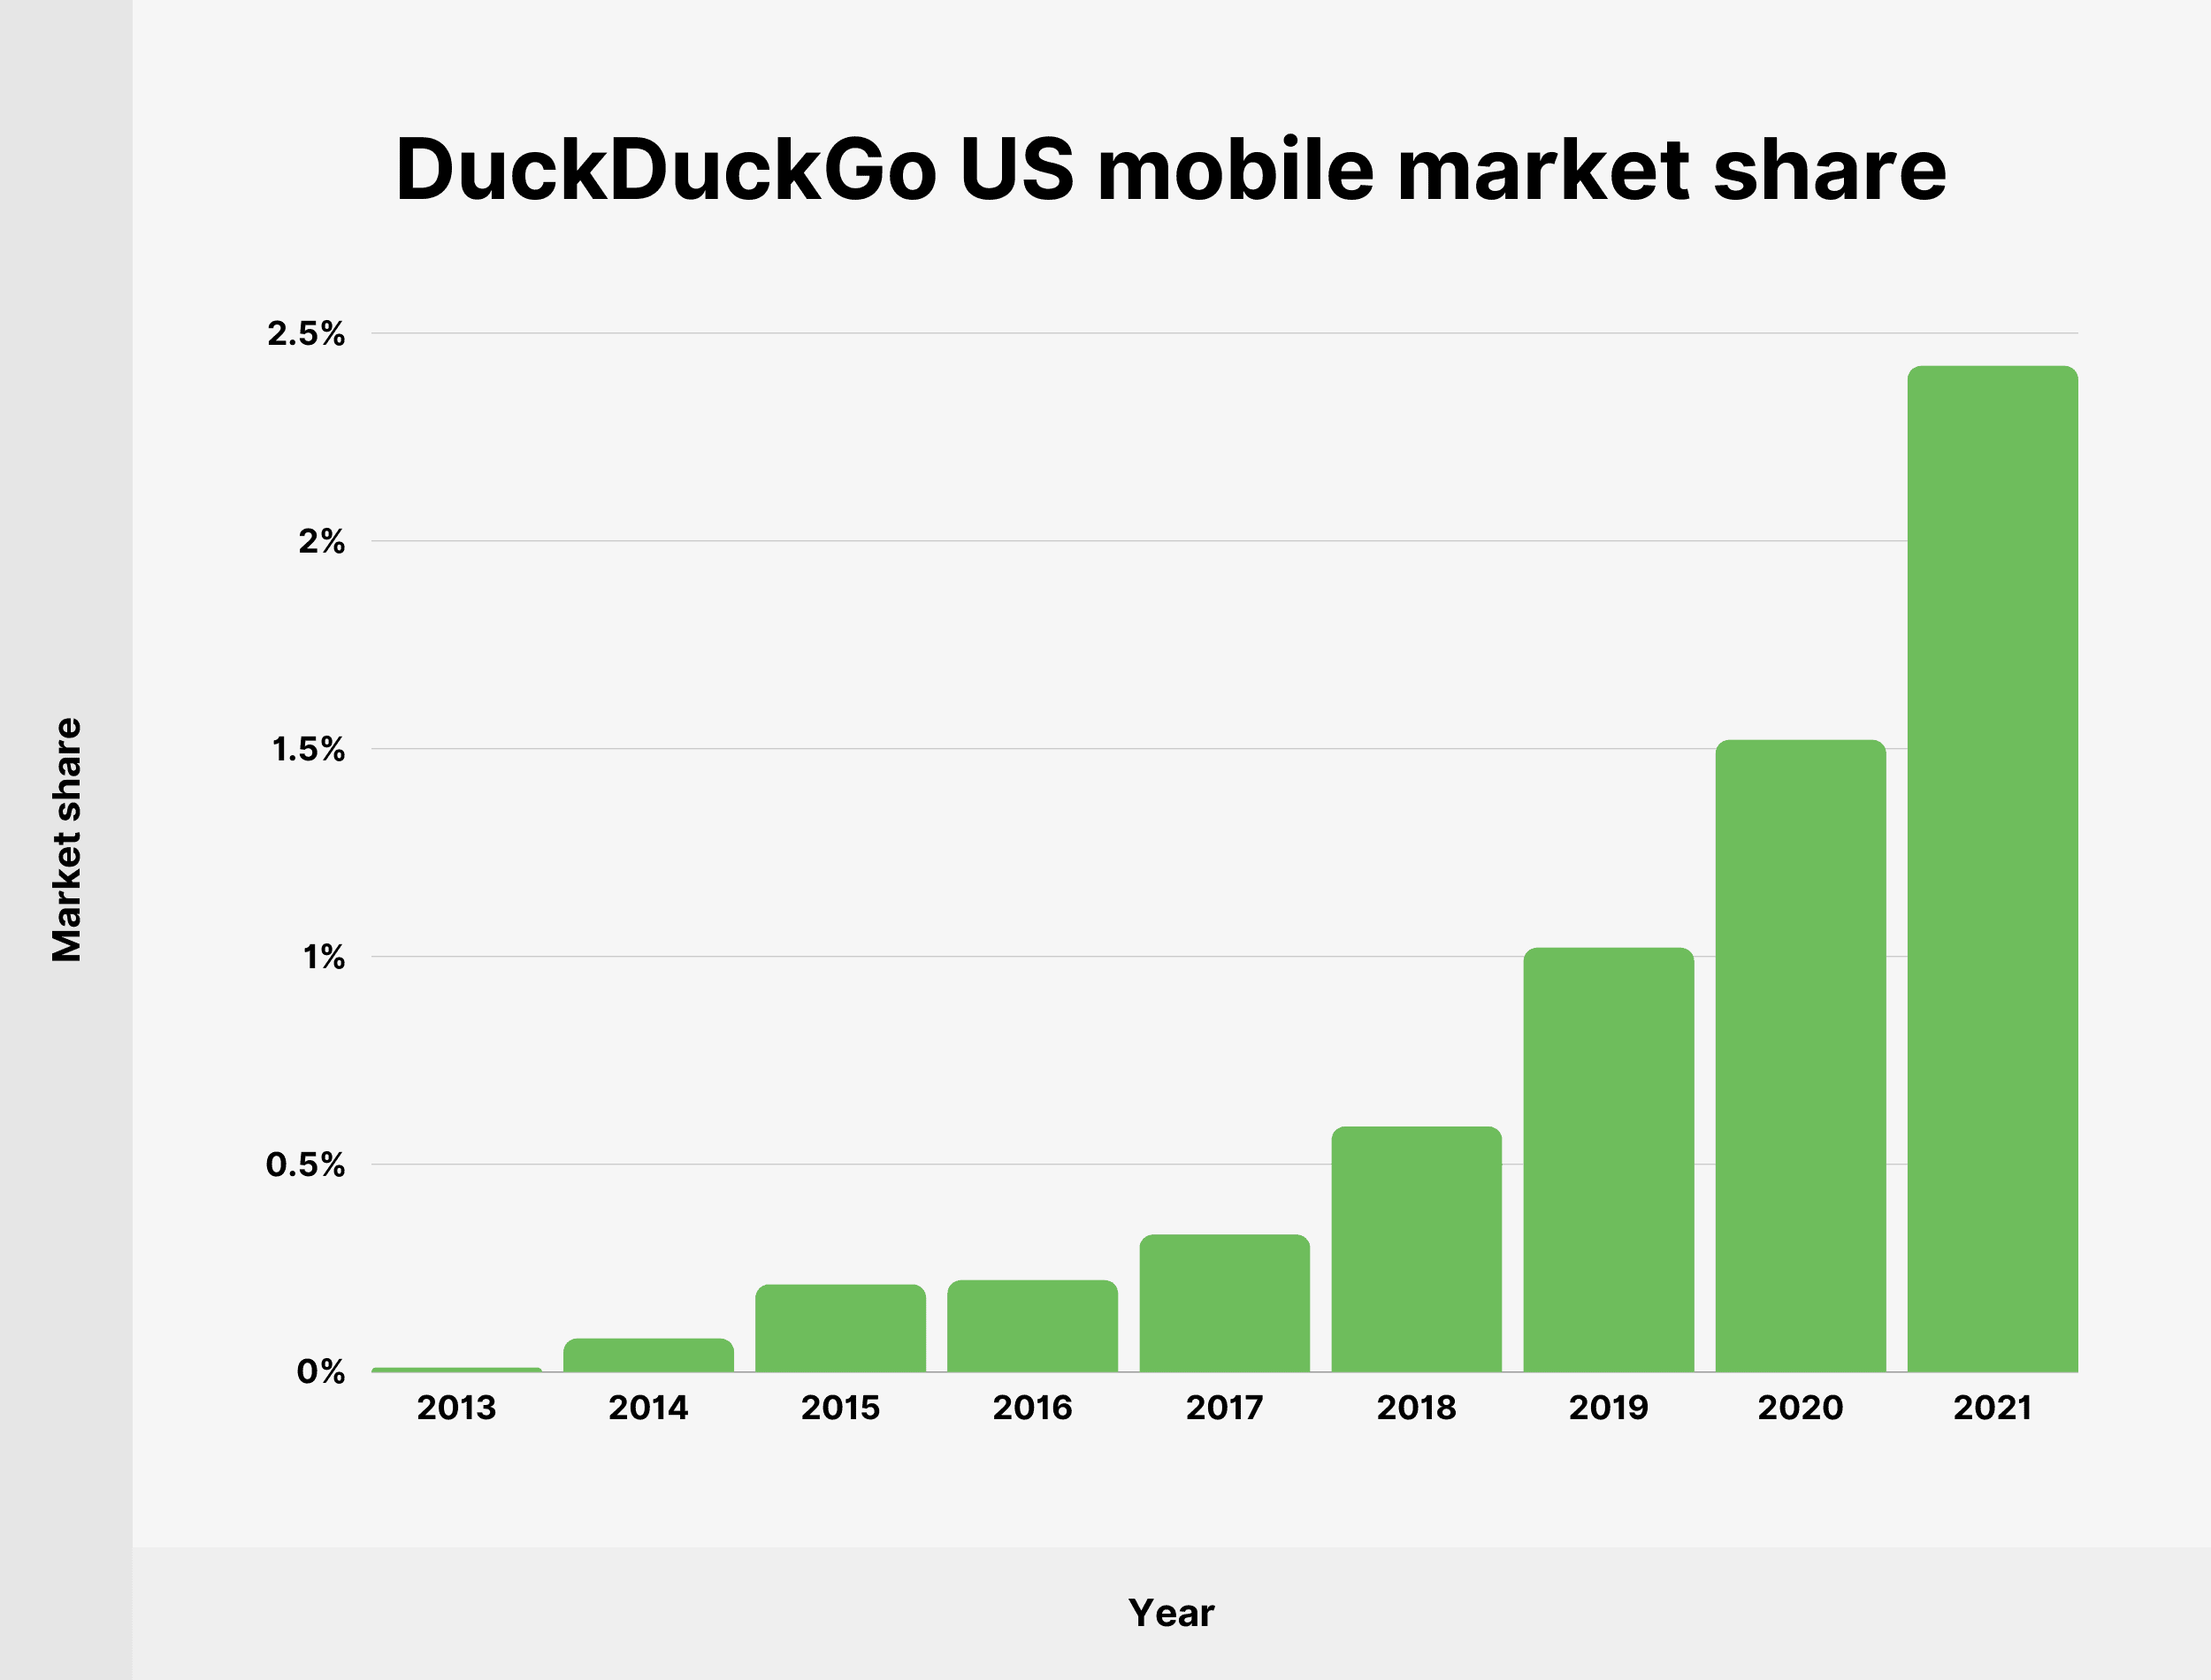 DuckDuckGo US mobile market share